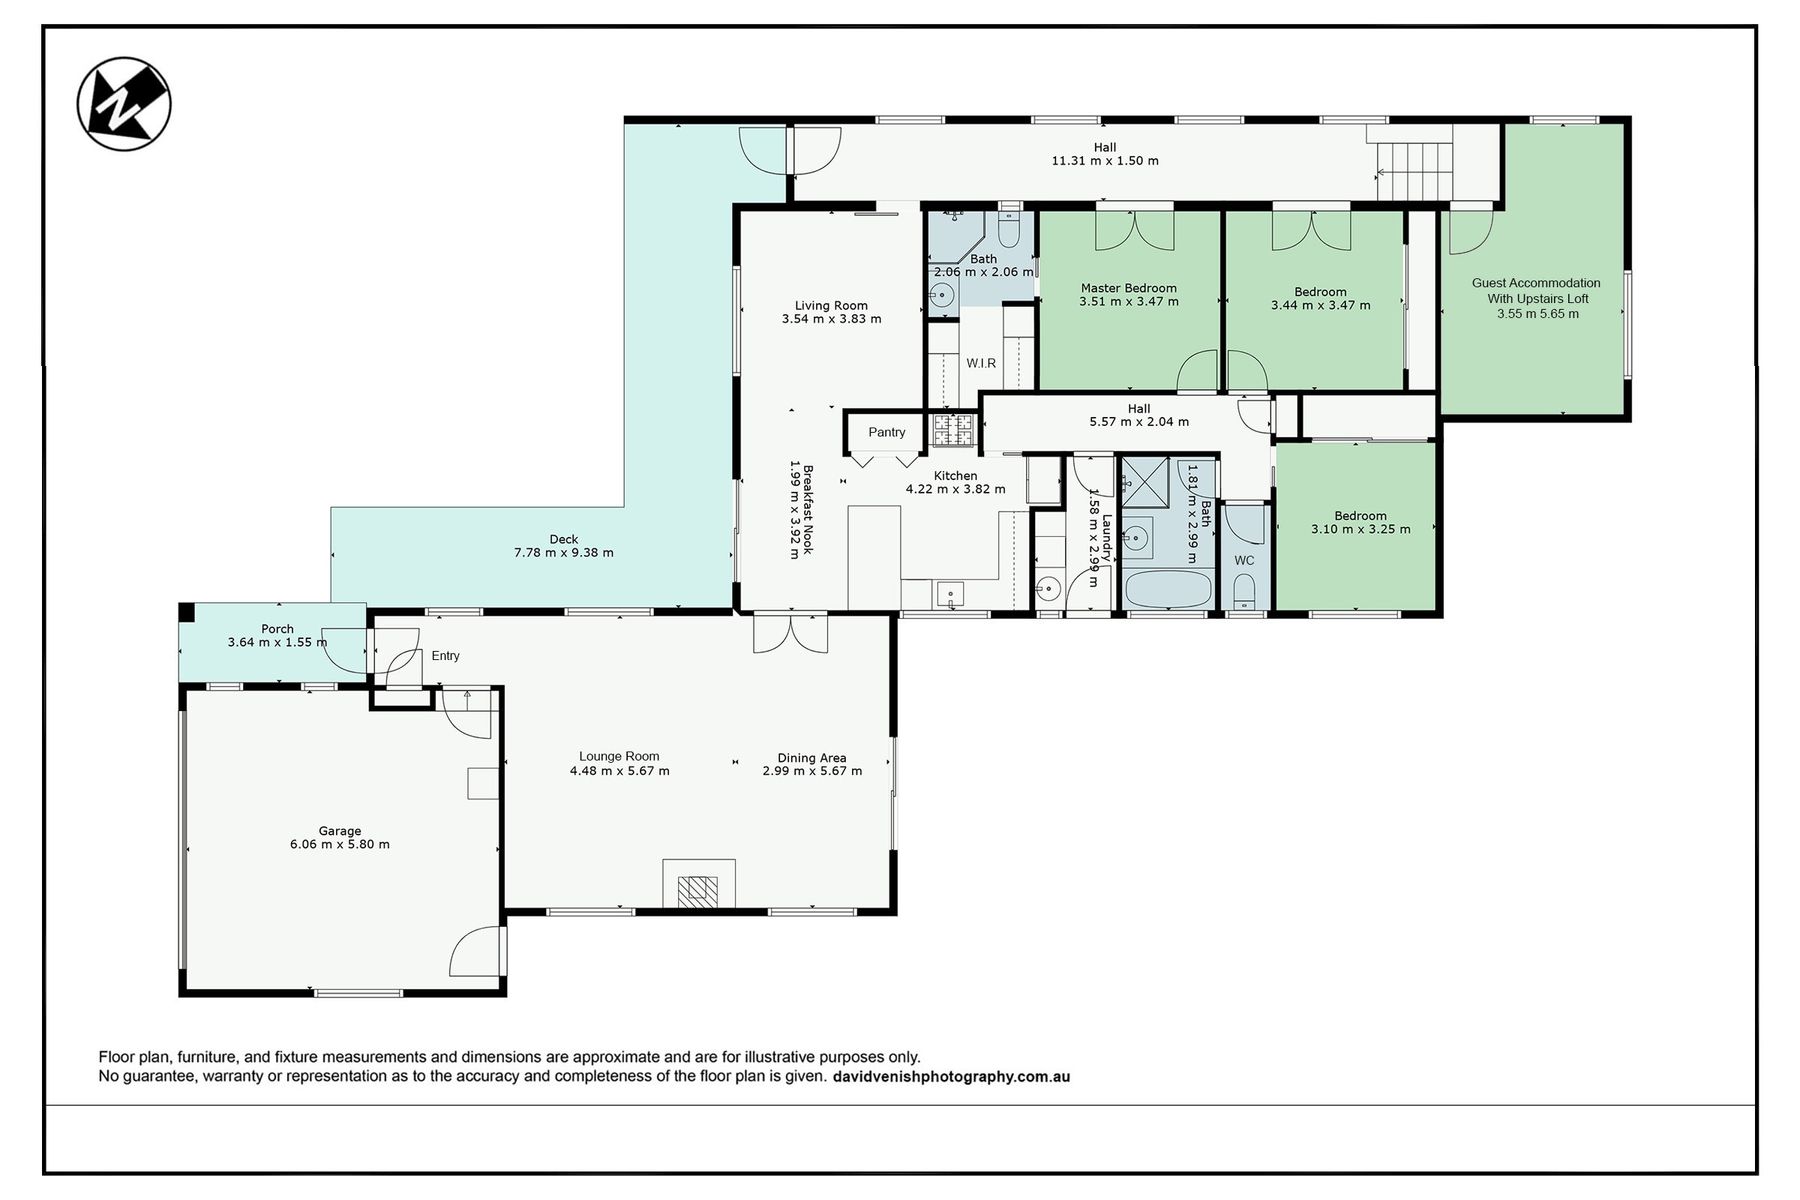 28 Berrima Road Moss Vale   Floor Plan no address